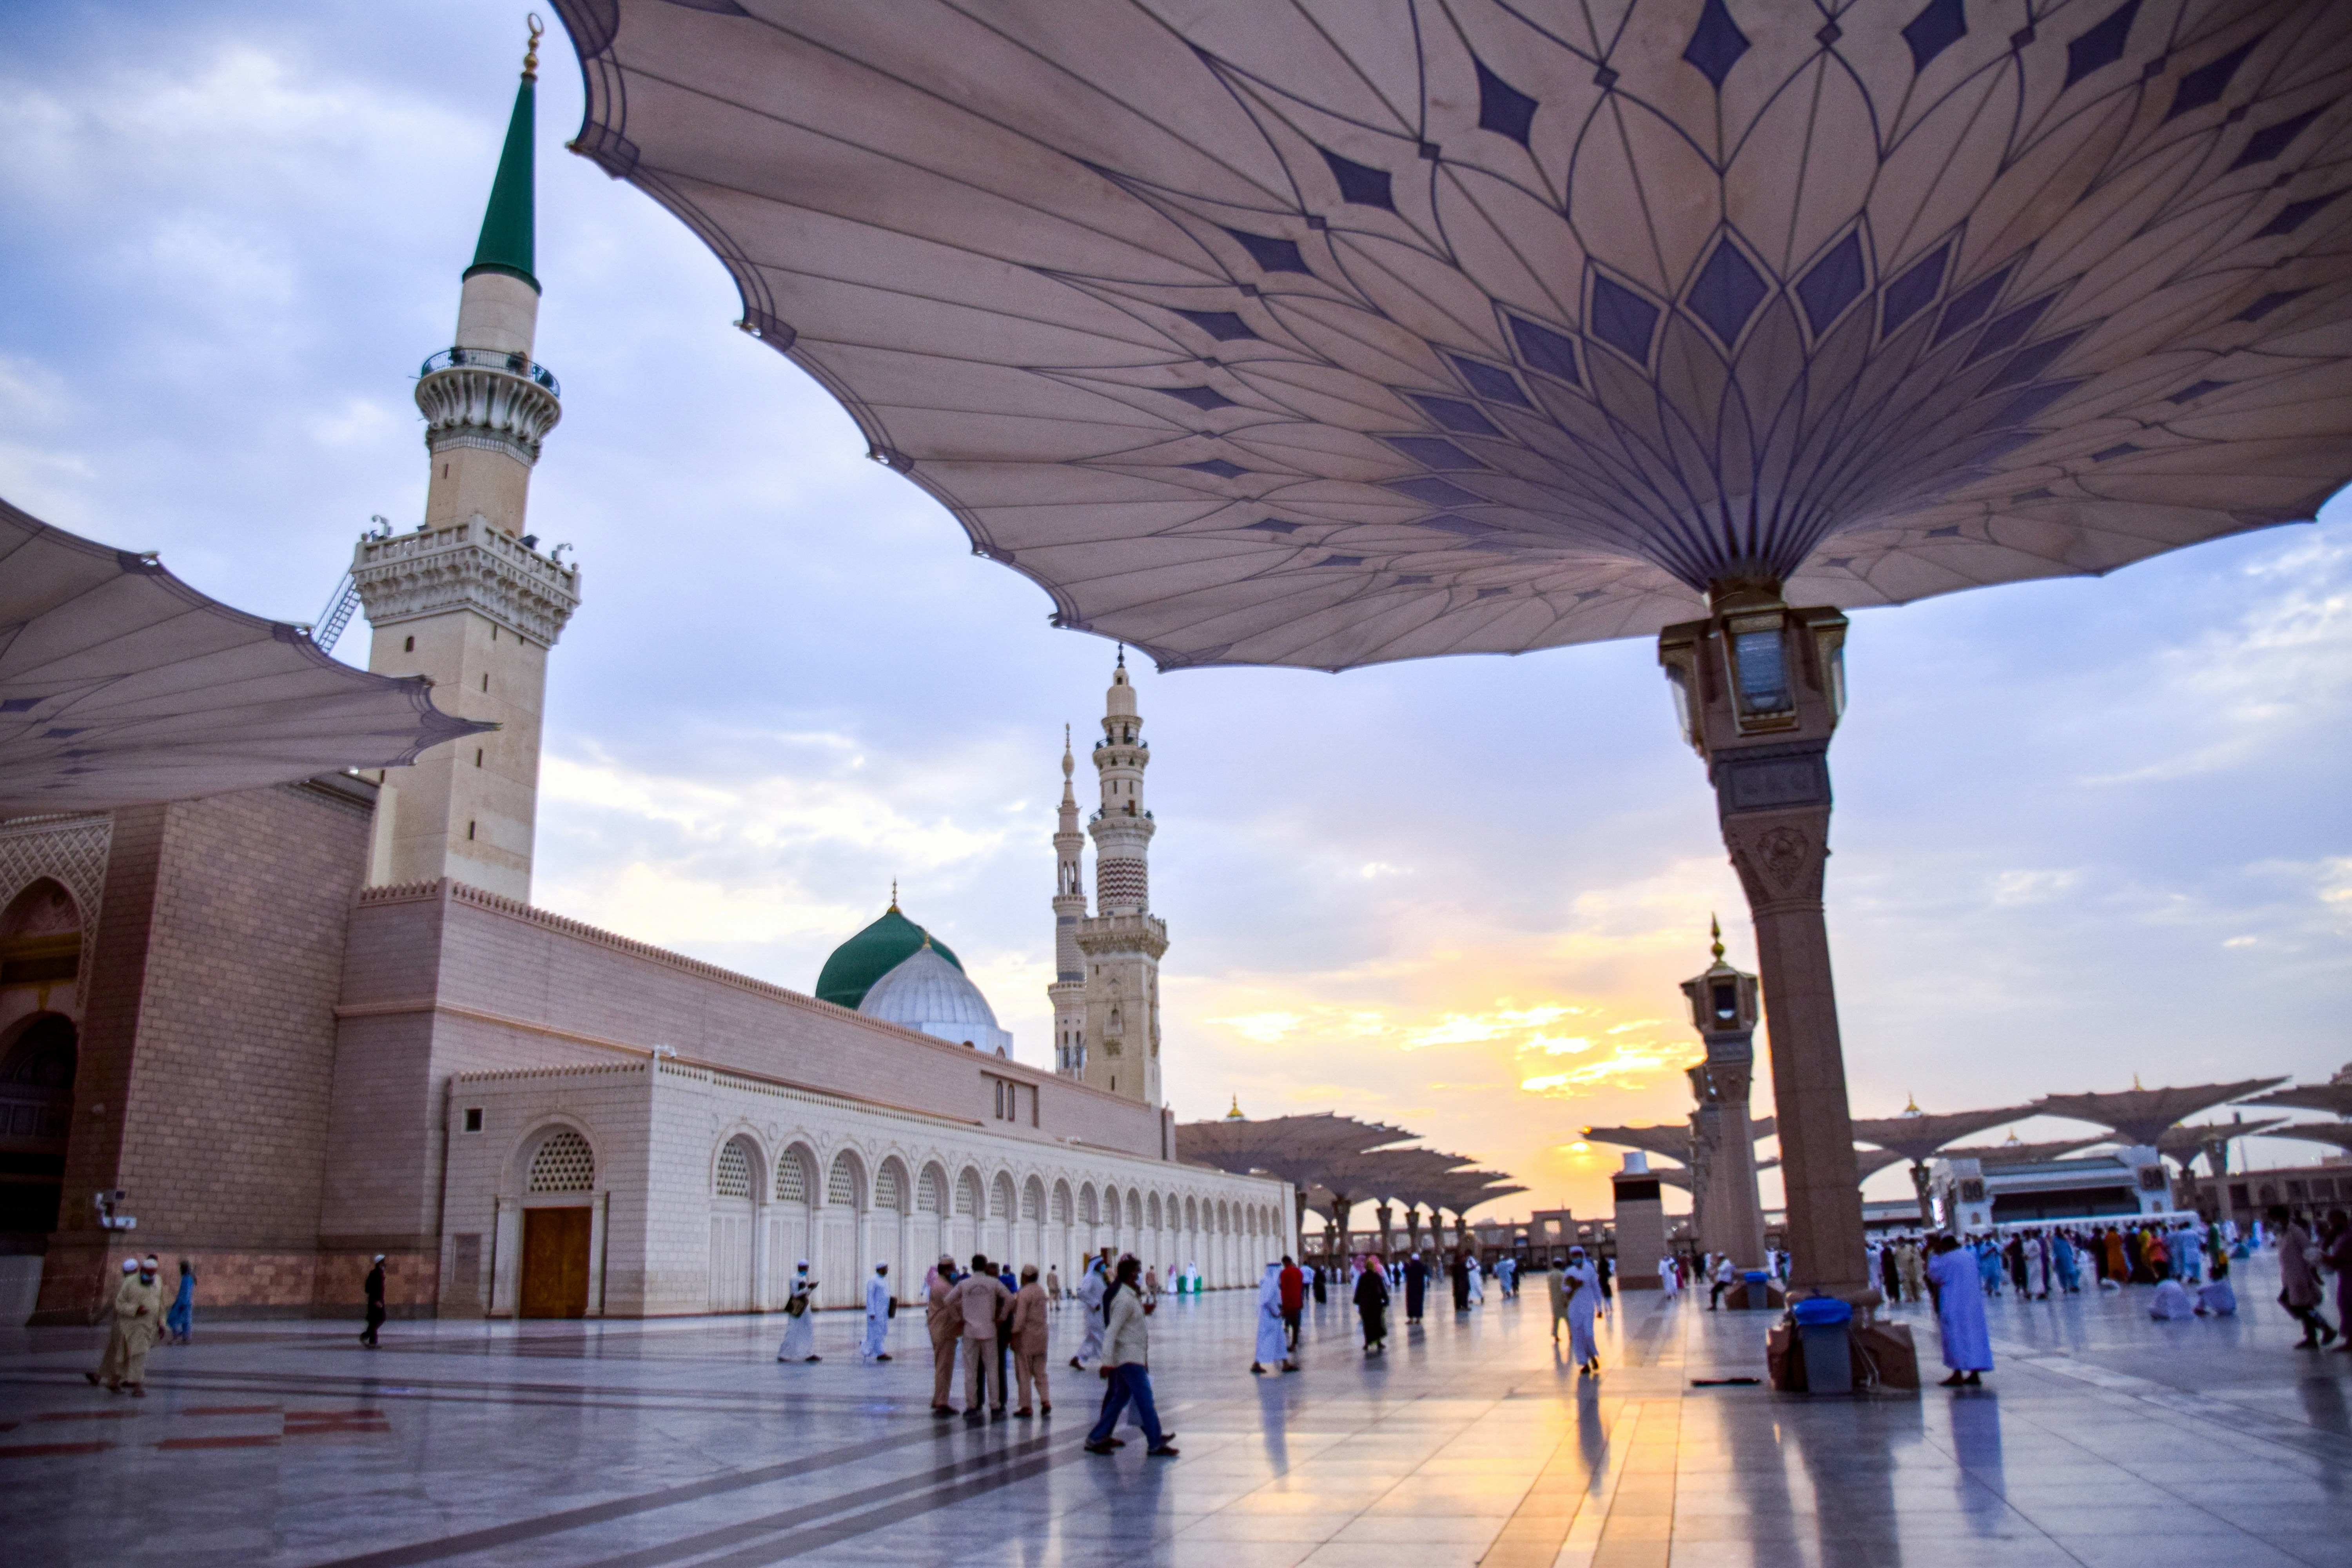 Berkunjung ke masjid ikonik jadi salah satu aktivitas dalam konteks wisata halal (Sumber gambar: Unsplash/Haidan)